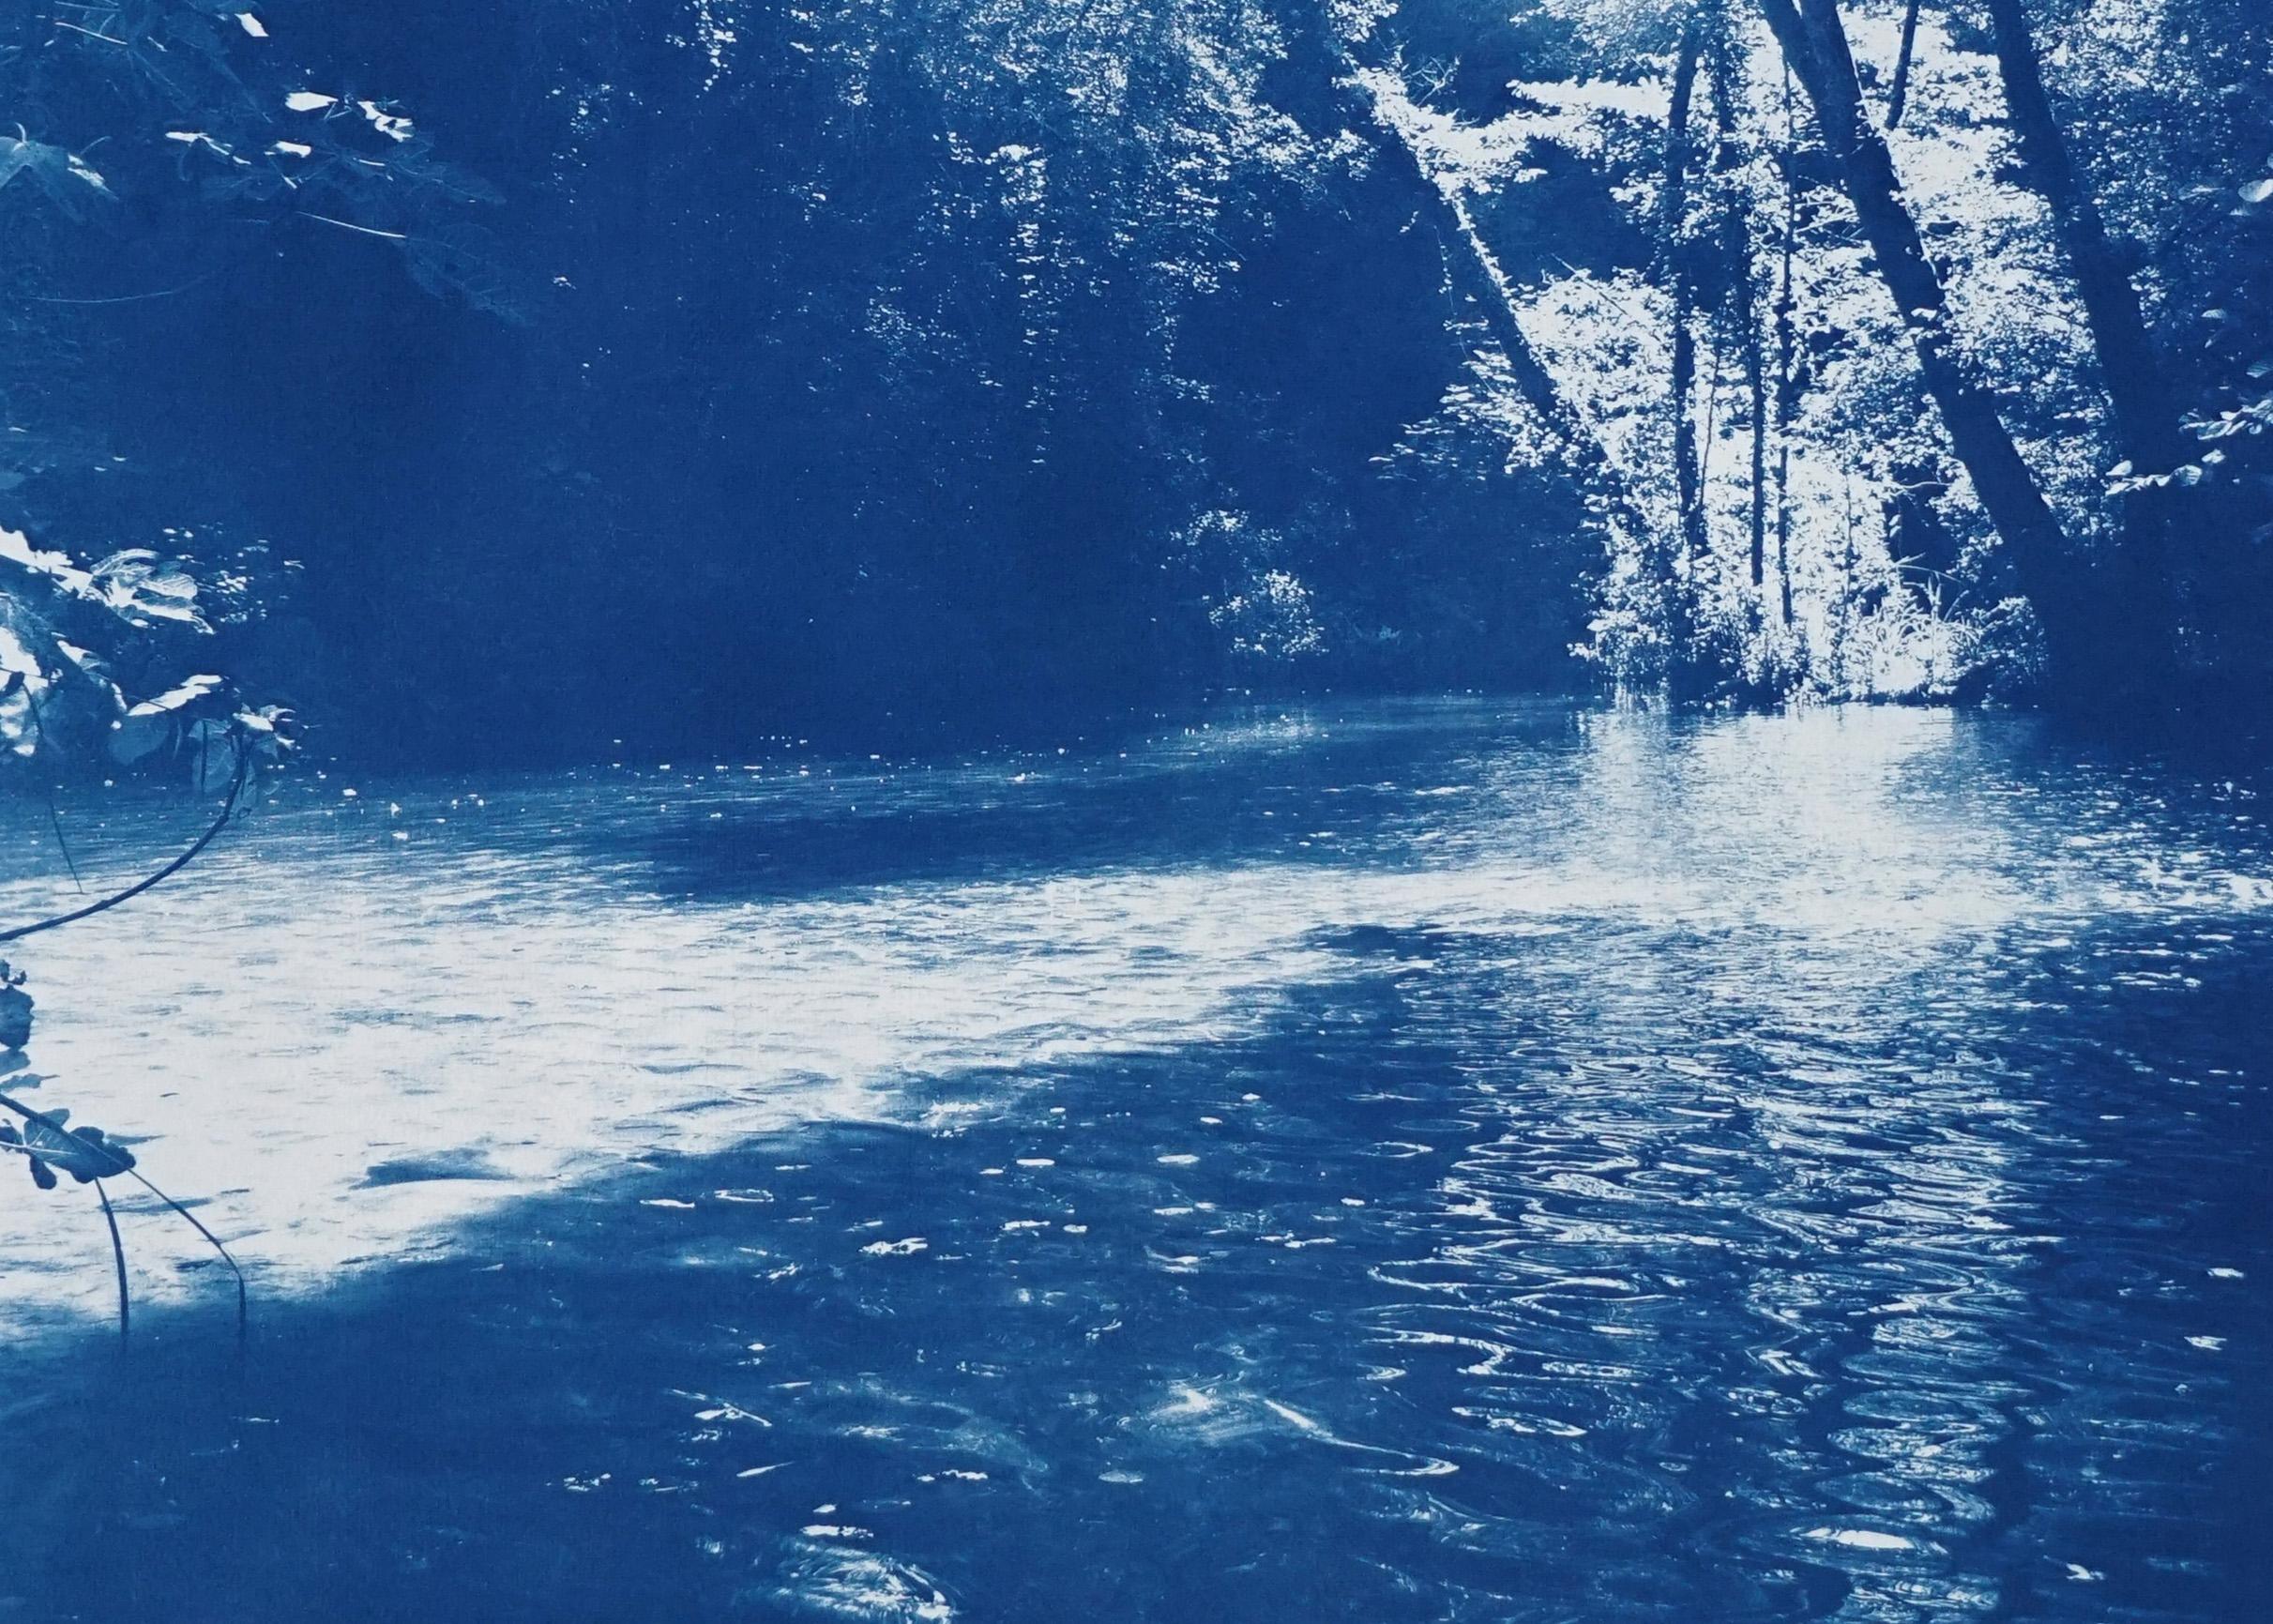 Dies ist eine exklusive handgedruckte Cyanotypie in limitierter Auflage.
Wunderschöne Szene eines versteckten Teichs in einem skandinavischen Wald.  

Einzelheiten:
+ Titel: Skandinavischer Märchenwald
+ Jahr: 2022
+ Auflagenhöhe: 50
+ Gestempelt